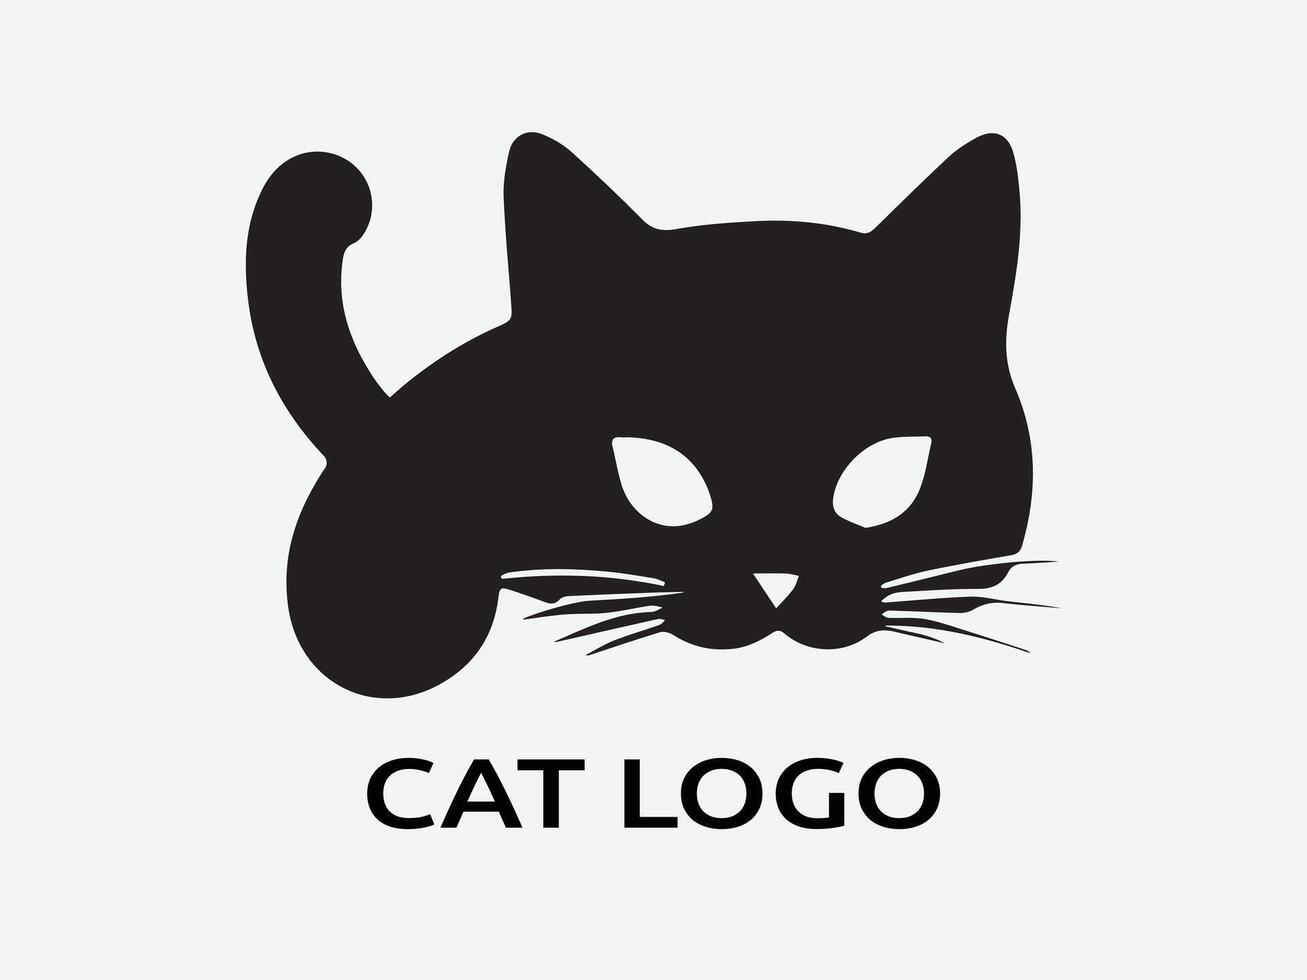 modelo de vetor de design de logotipo de gato